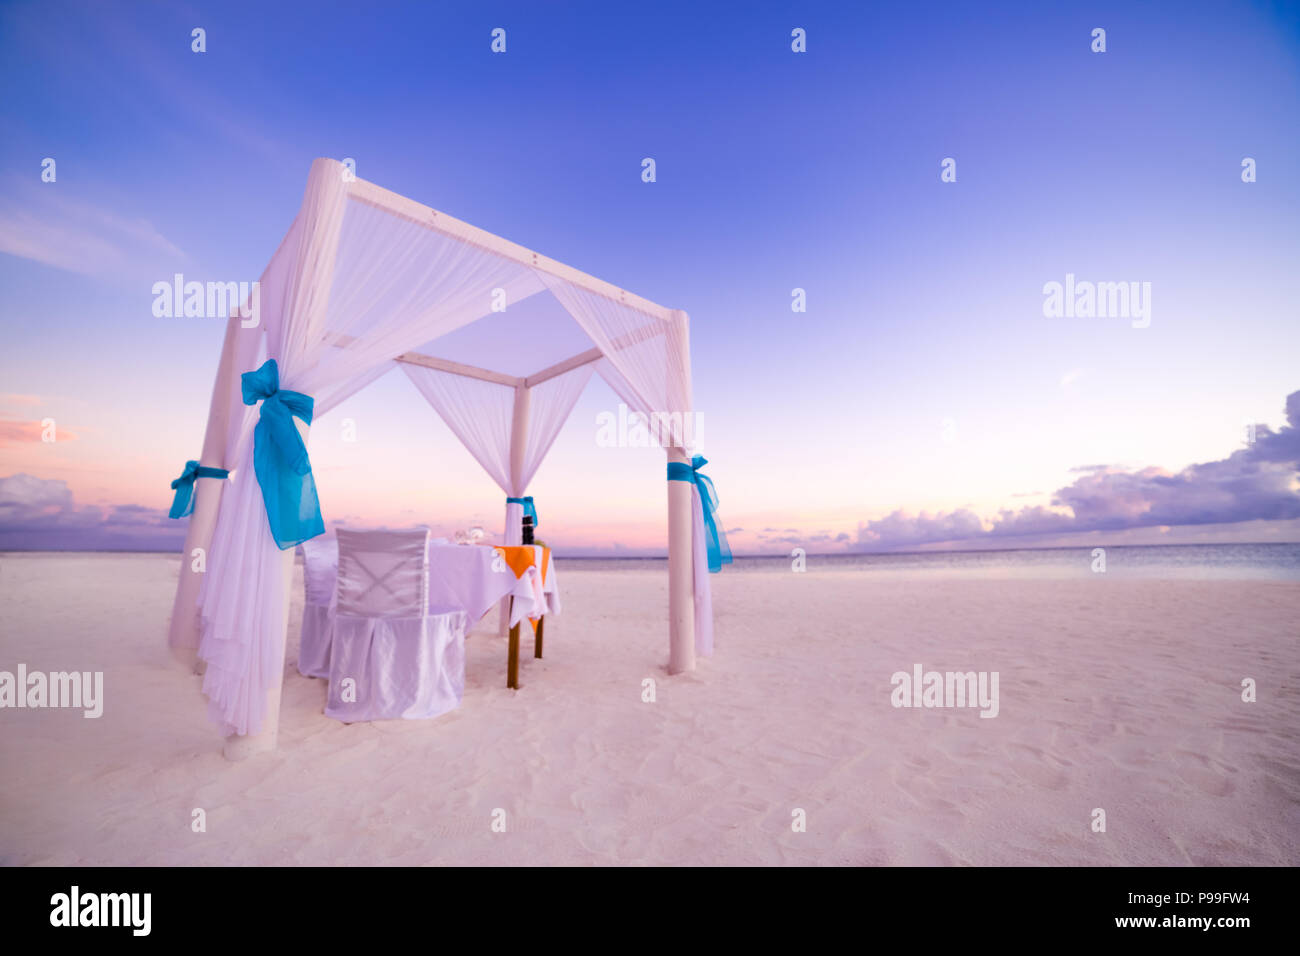 Cena romántica el cuadro set-up para una luna de miel en la playa bajo el cielo del atardecer. Concepto de boda y luna de miel exóticas Foto de stock